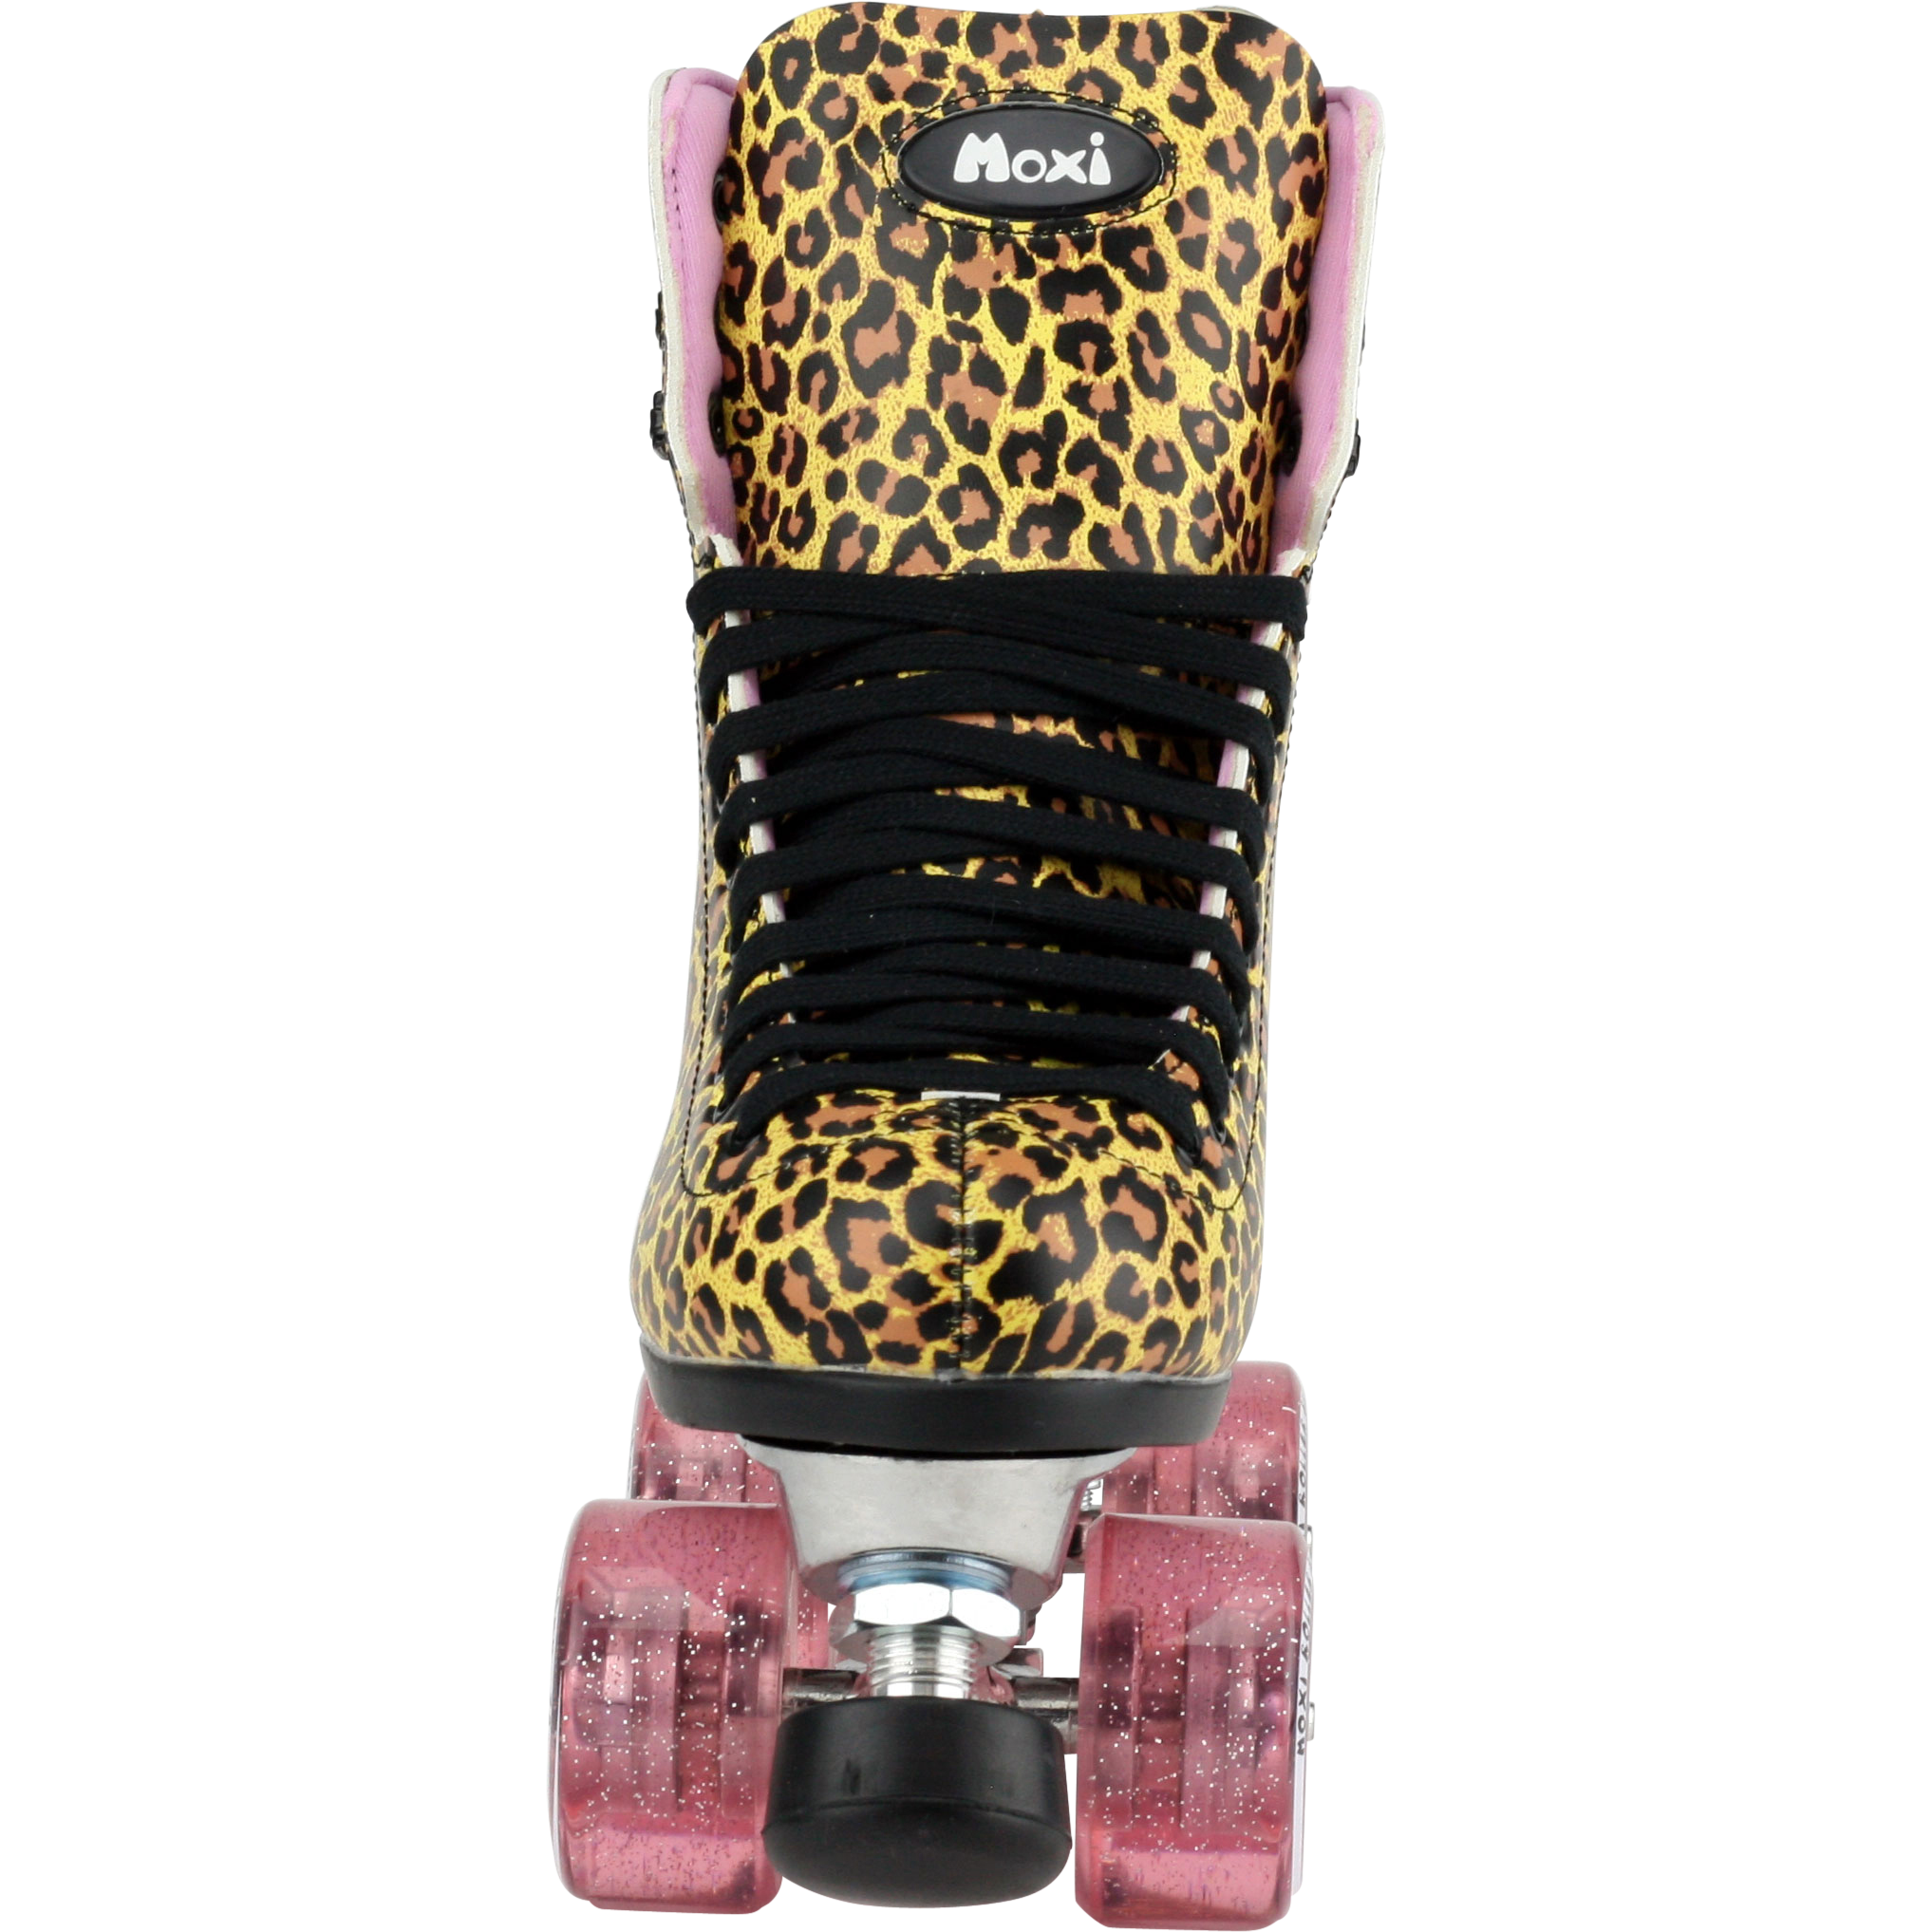 Moxi Jungle Leopard Skates (w/ Pink cuff and Pink Juicy Wheels)